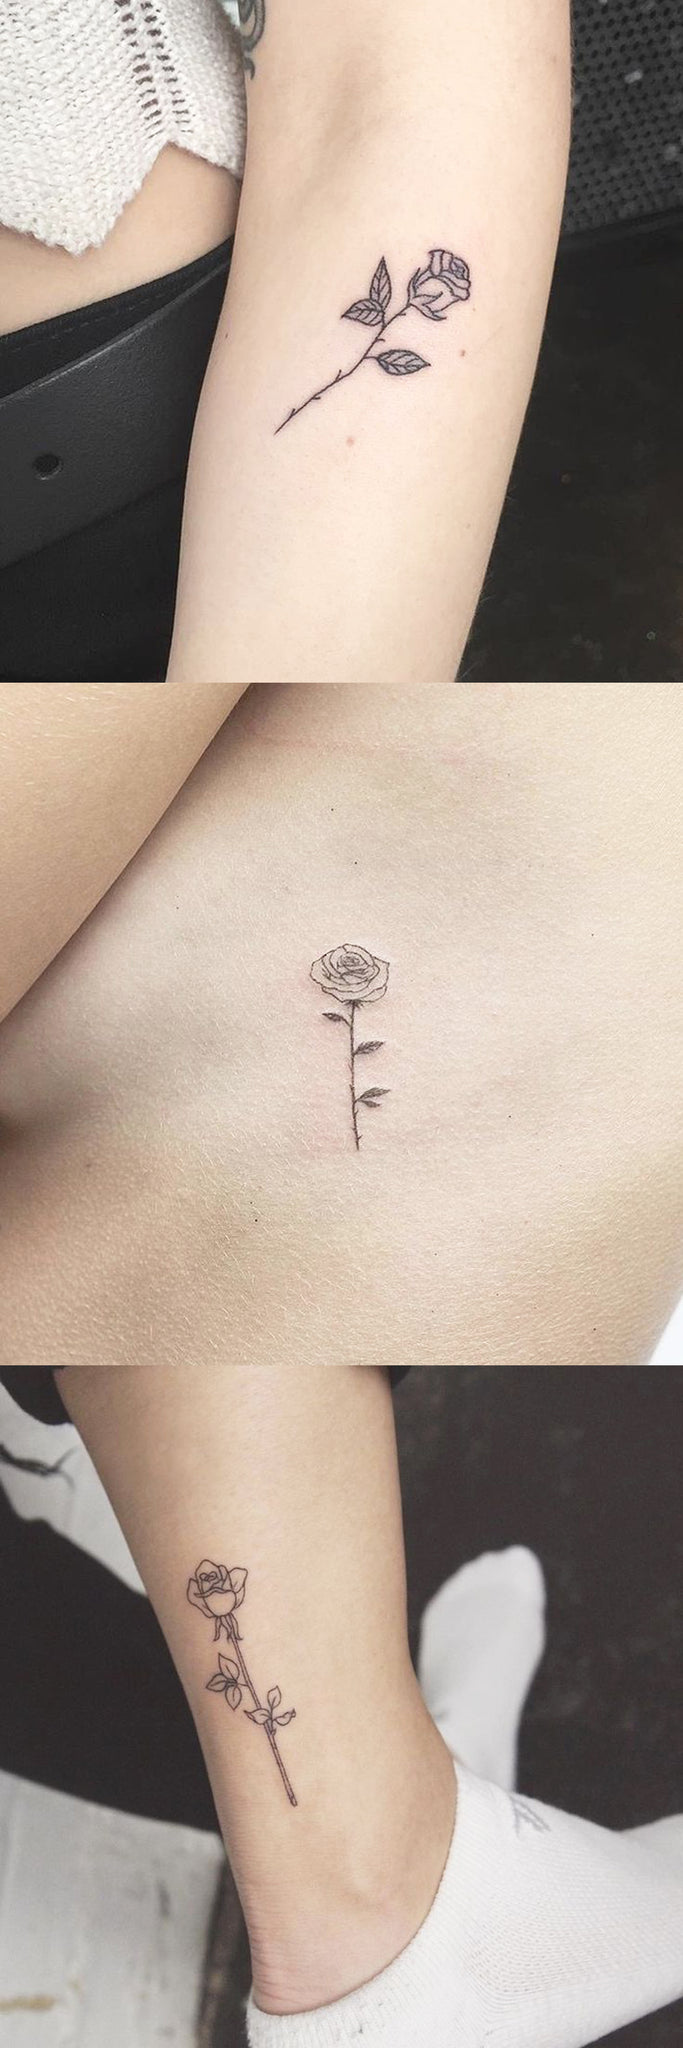 Minimalist Small Rose Ankle Tattoo Ideas - Tiny Flower Rib Tatt - Cute Floral Wrist Tat - MyBodiArt.com